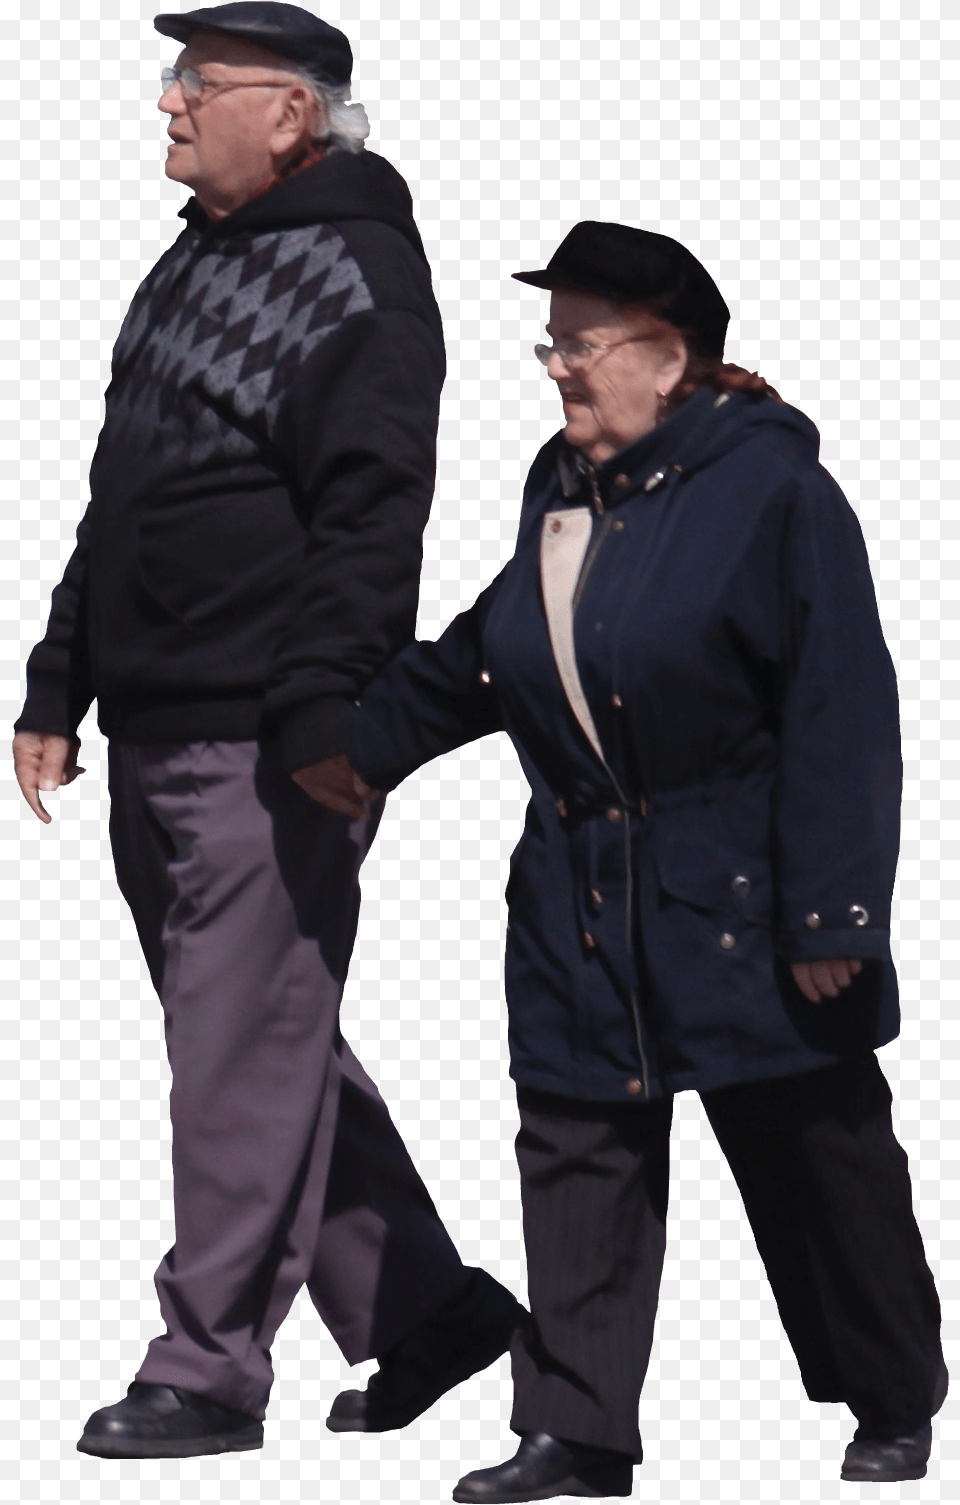 Old People Walking, Sleeve, Jacket, Long Sleeve, Coat Png